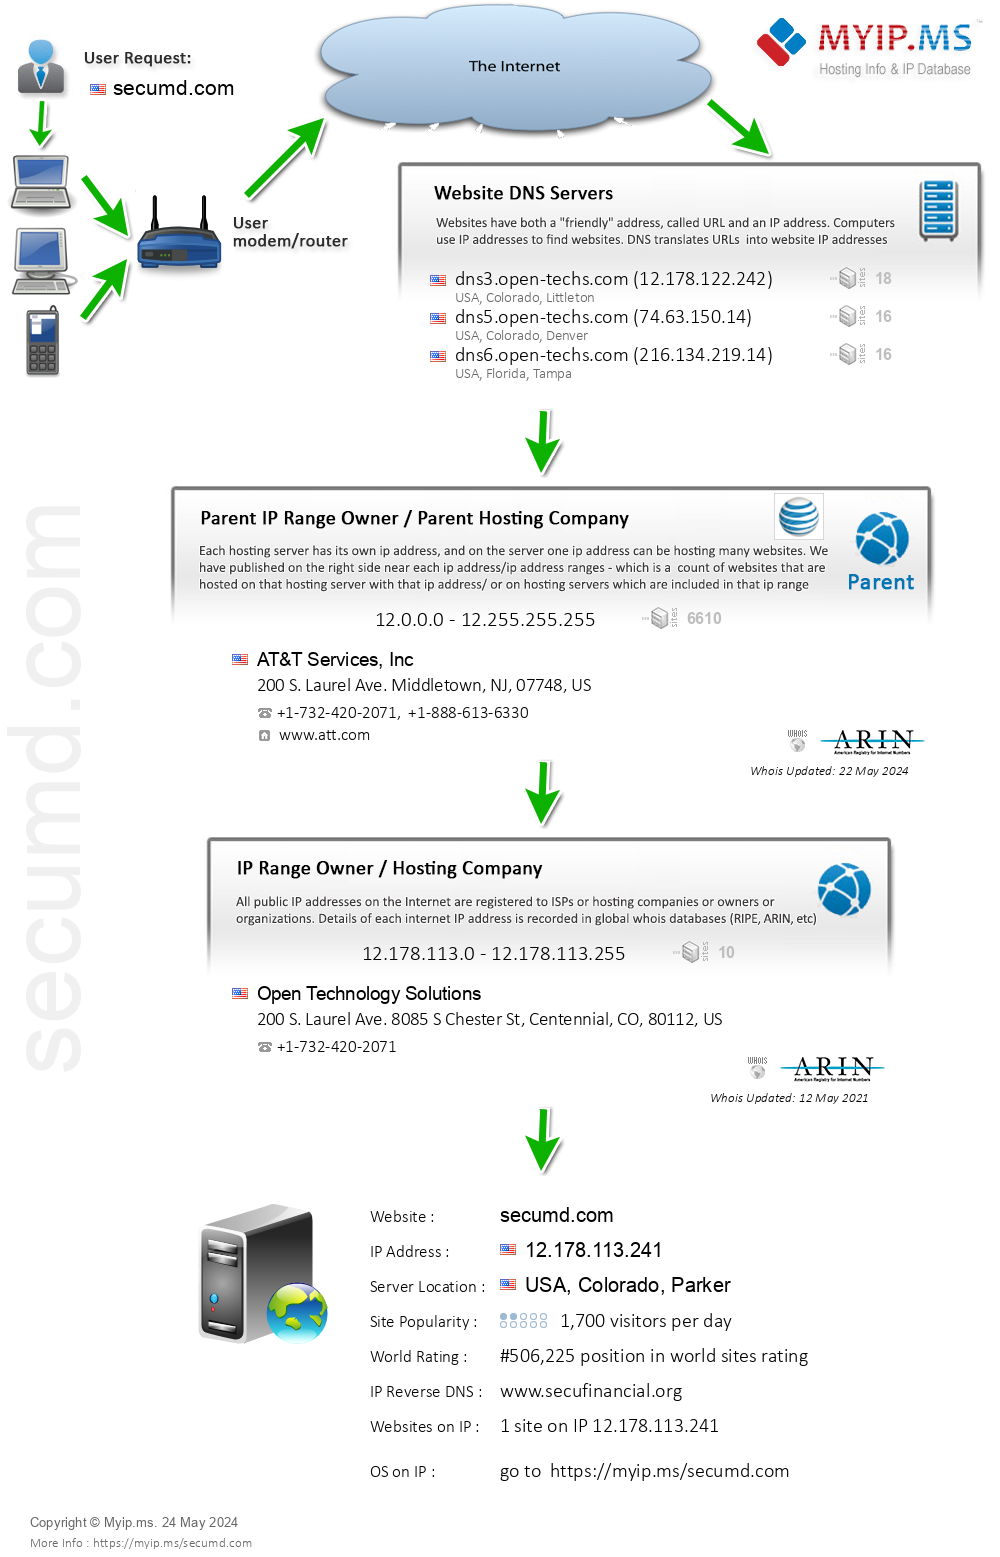 Secumd.com - Website Hosting Visual IP Diagram